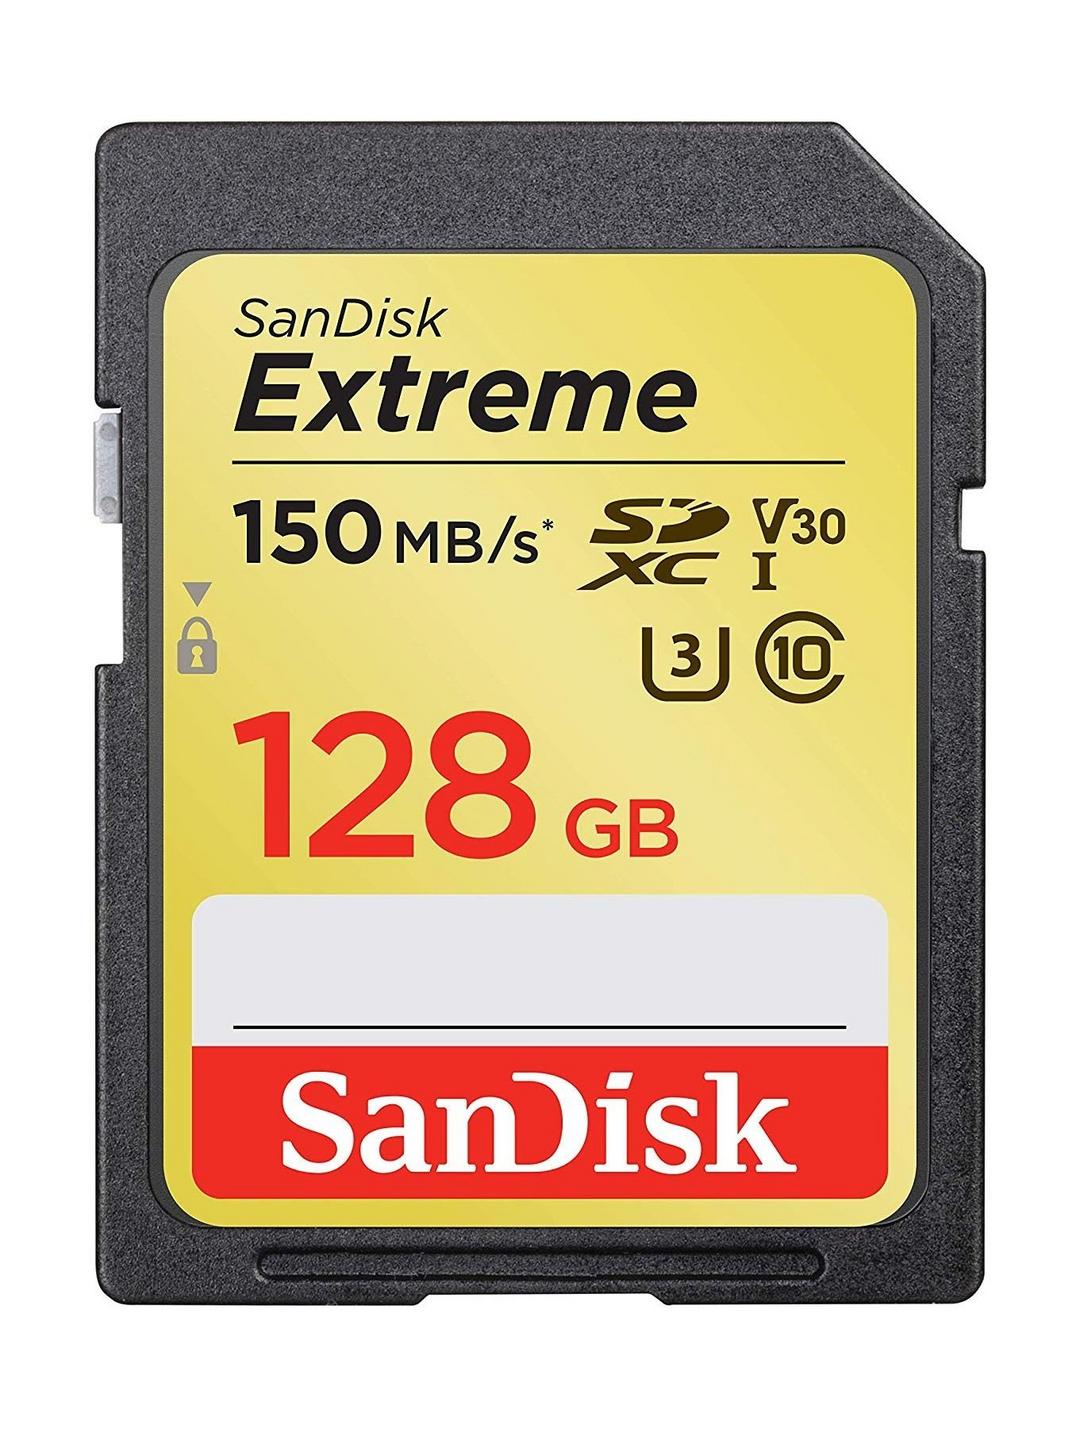 SanDisk 128GB Extreme SDXC UHS-I Memory Card